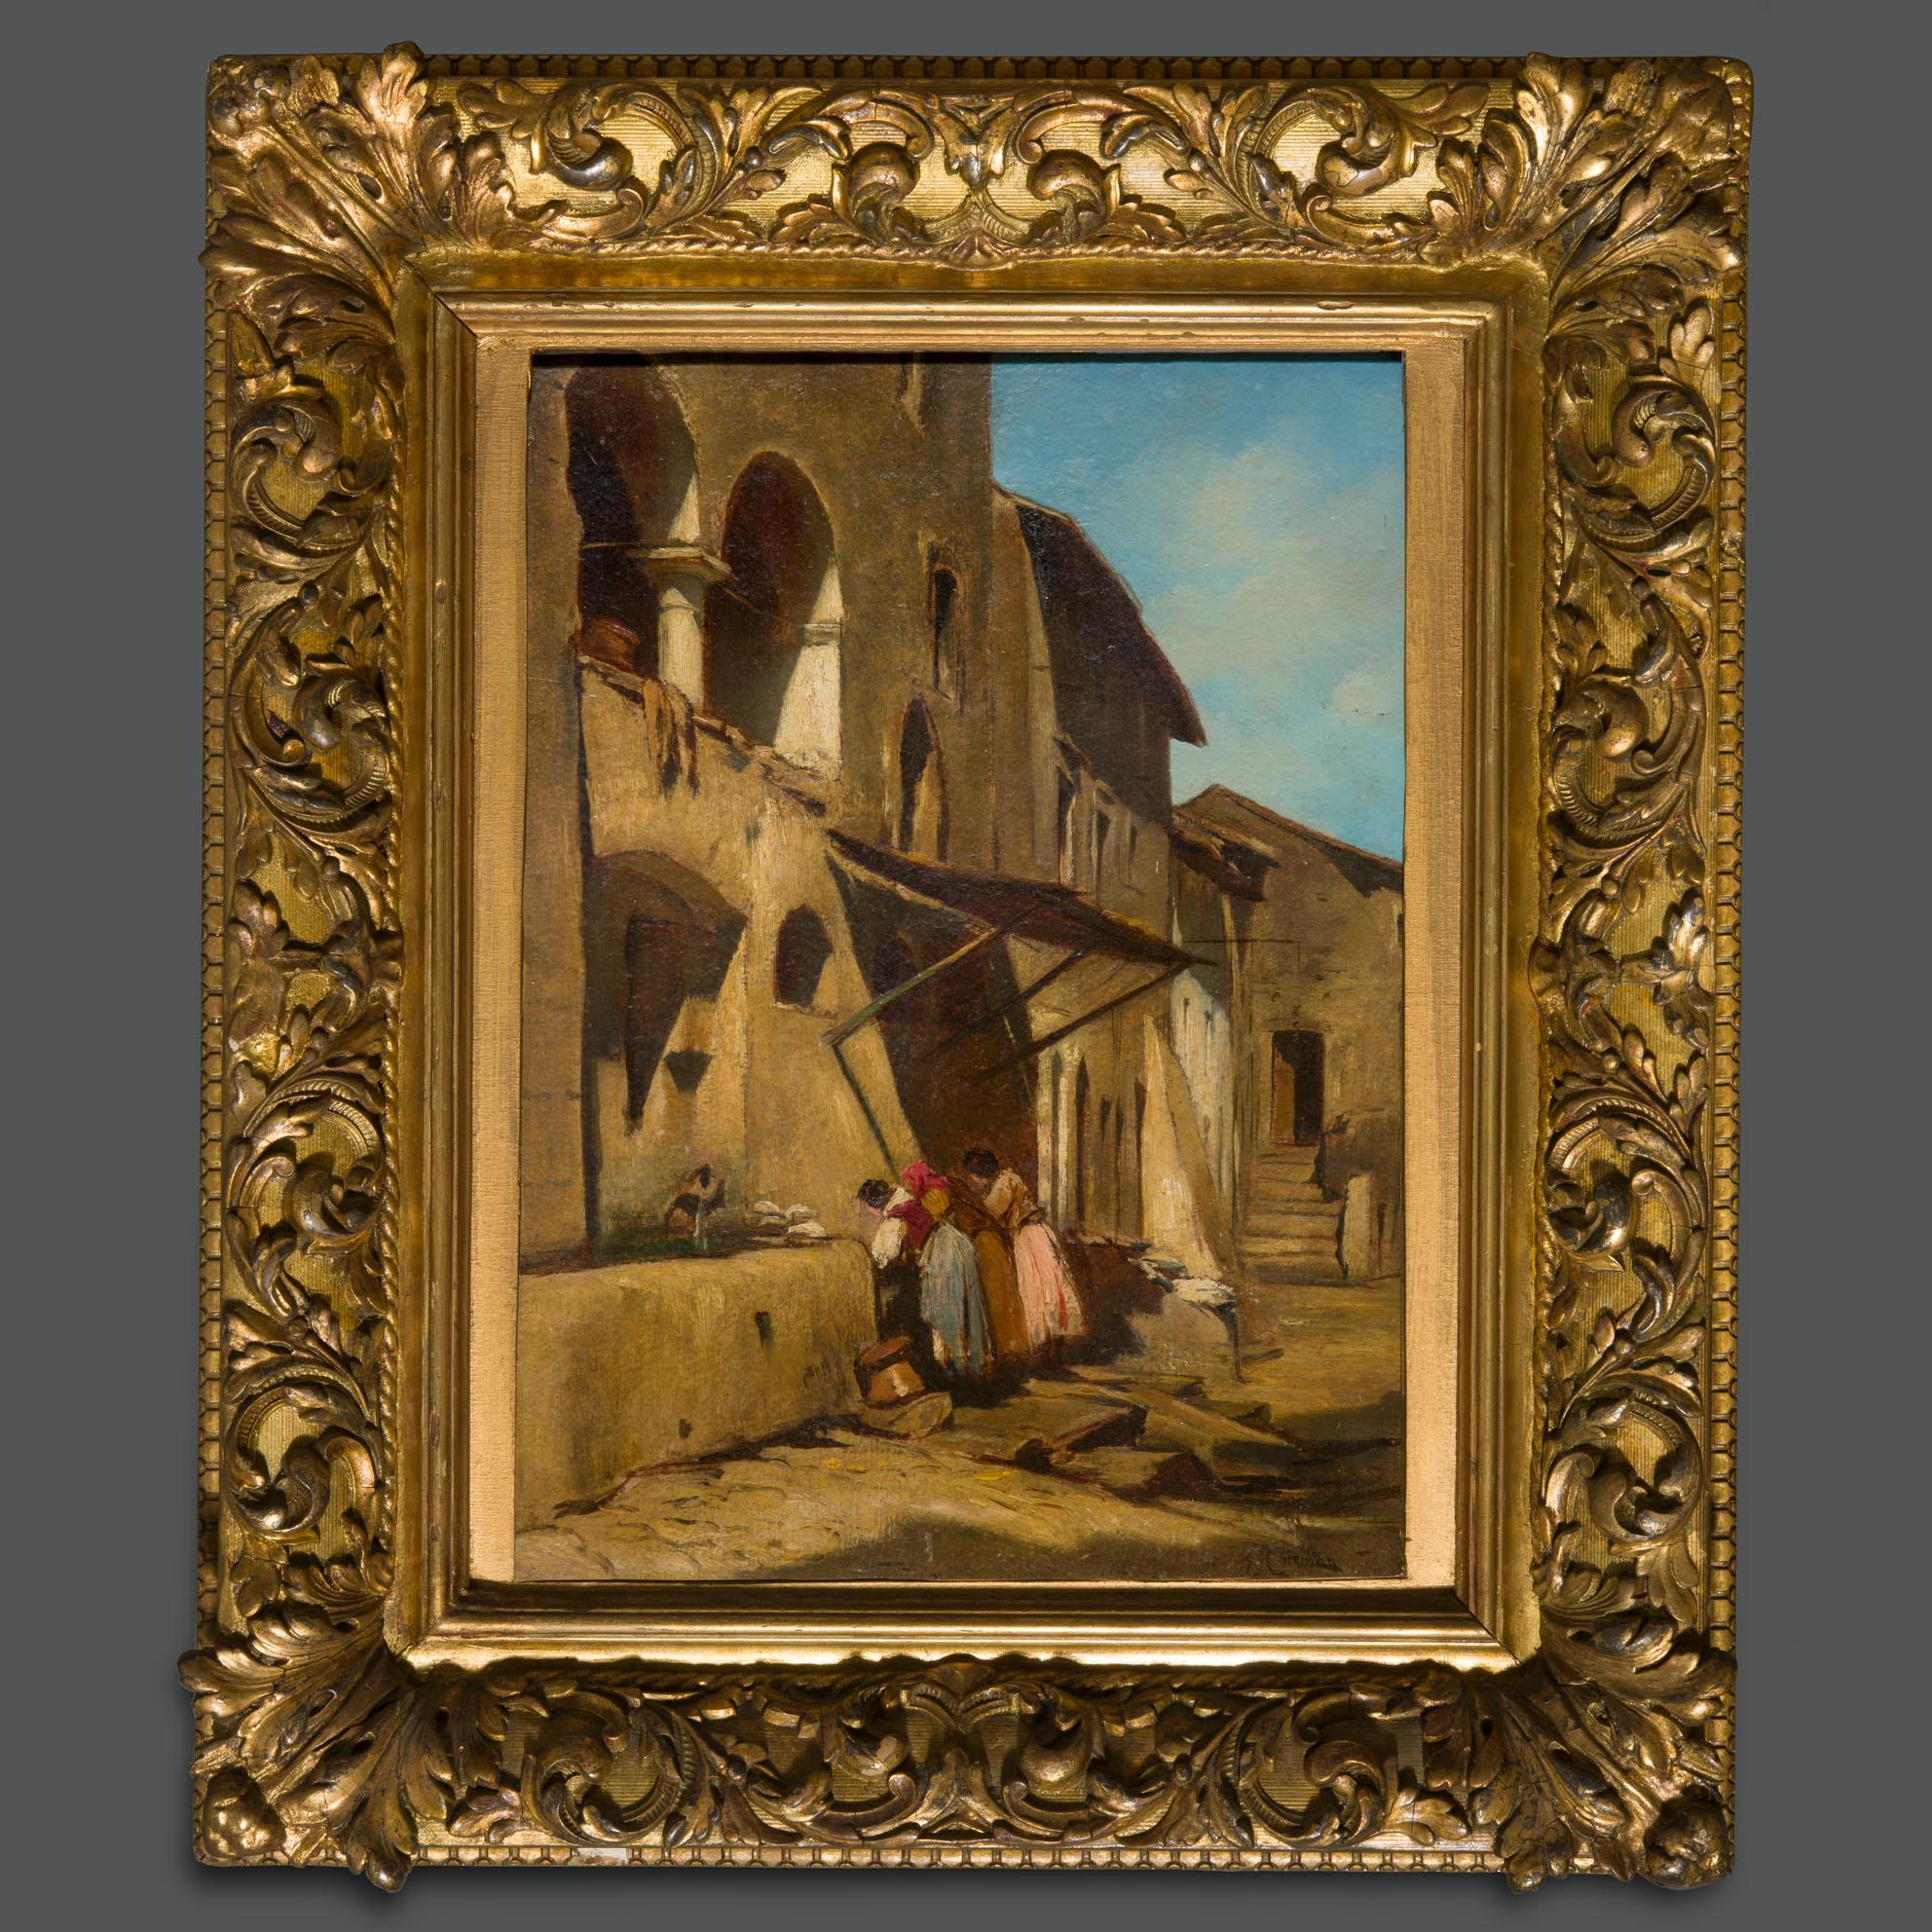 Un tableau important de l'un des artistes italiens les plus représentatifs du XIXe siècle, Enrico Coleman.
Elle représente un village très probablement du Latium, peut-être un aperçu d'Anticoli Corrado, la ville célèbre pour l'attrait de ses